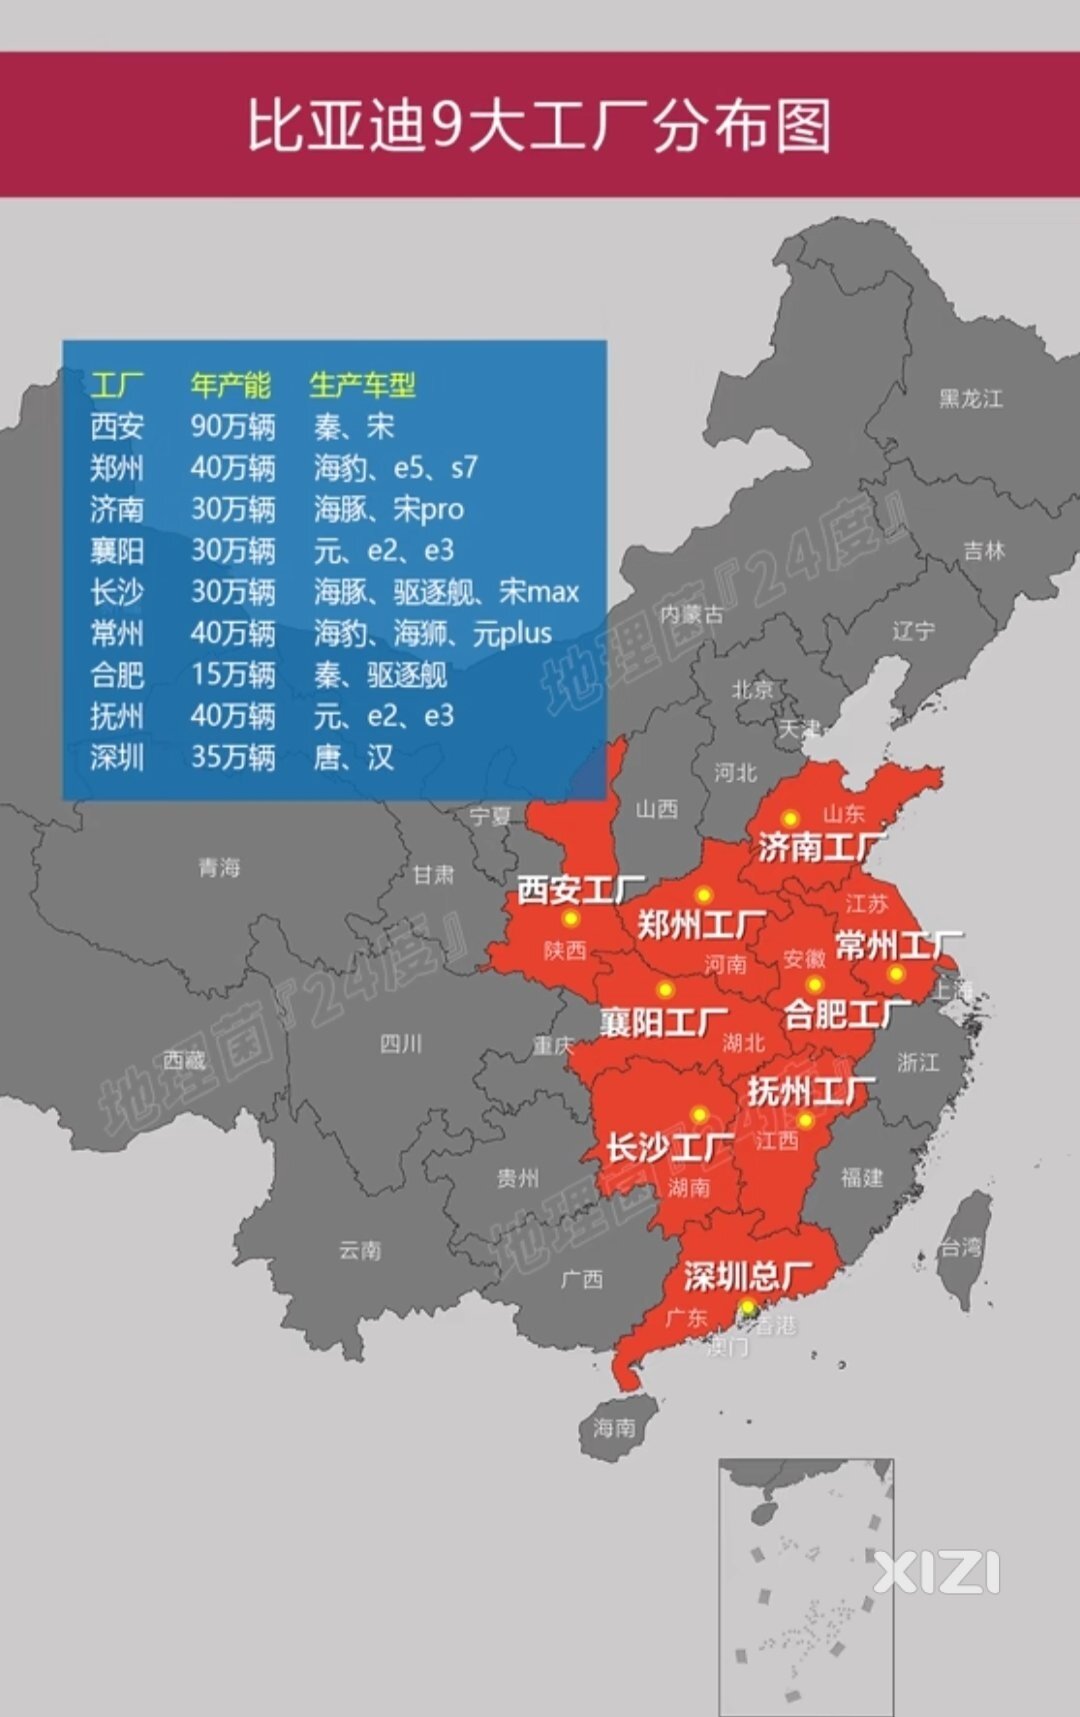 惠州地那么大，要是积极争取划部分大面积地。GDP不止于此啊